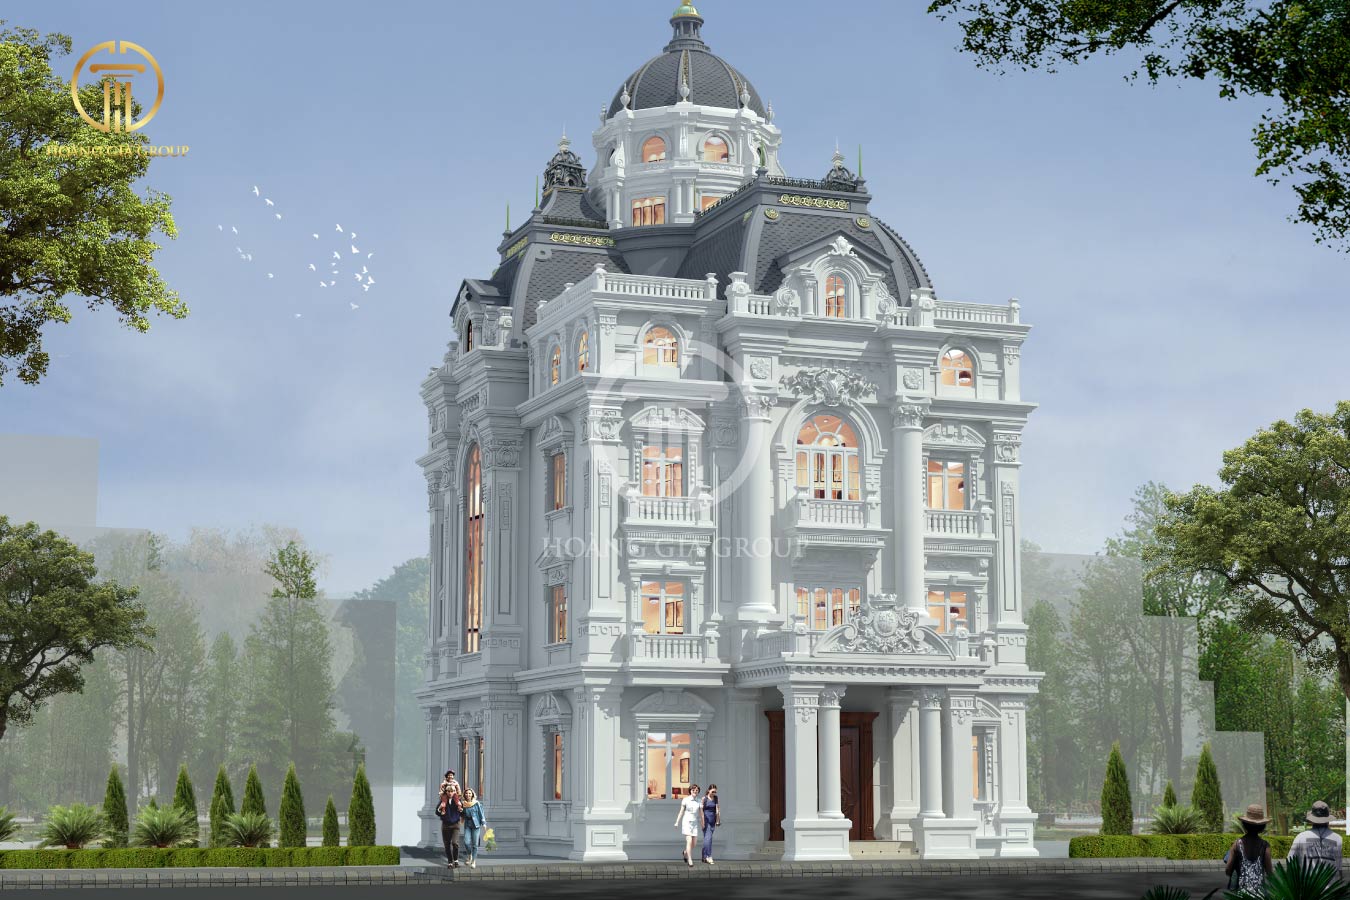 Thiết kế kiến trúc biệt thự lâu đài cổ điển Hải Phòng BT01716C - Hoàng Gia Group